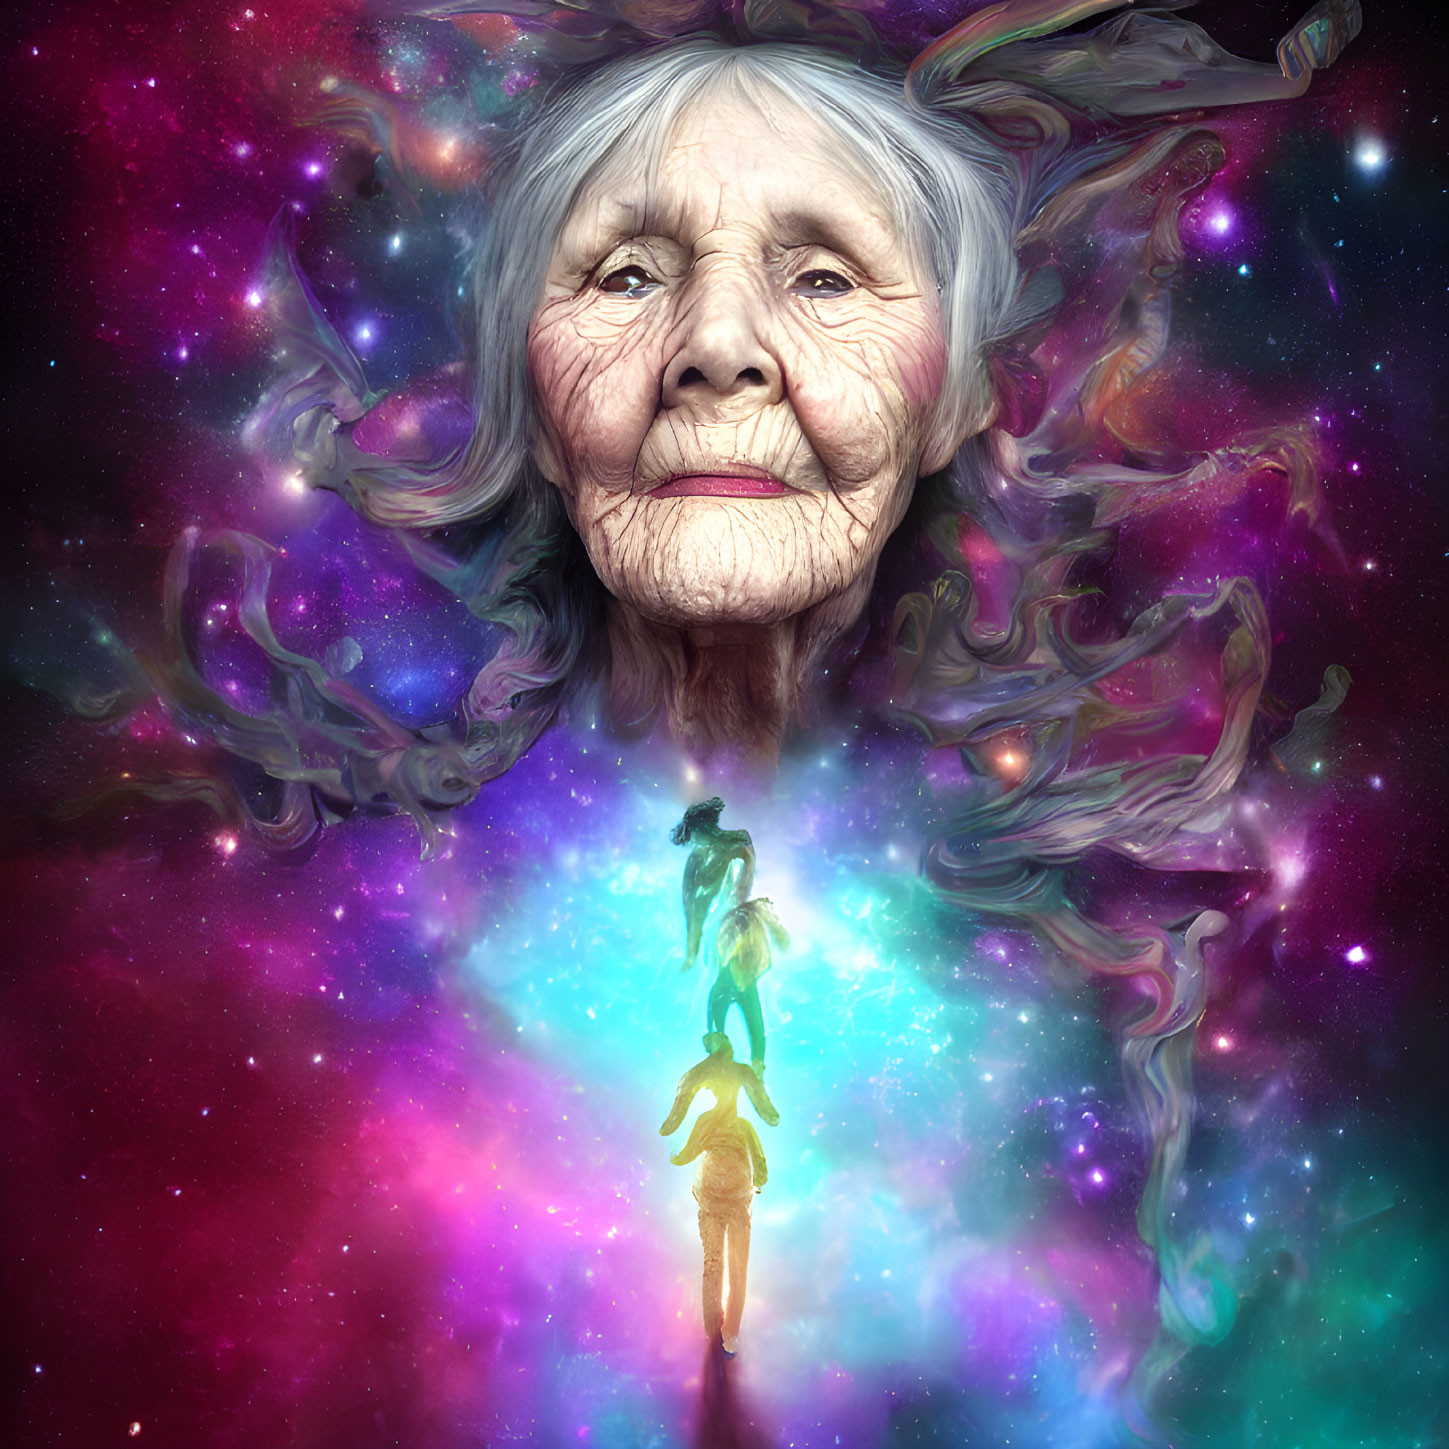 Serene elderly woman's face on vibrant cosmic background